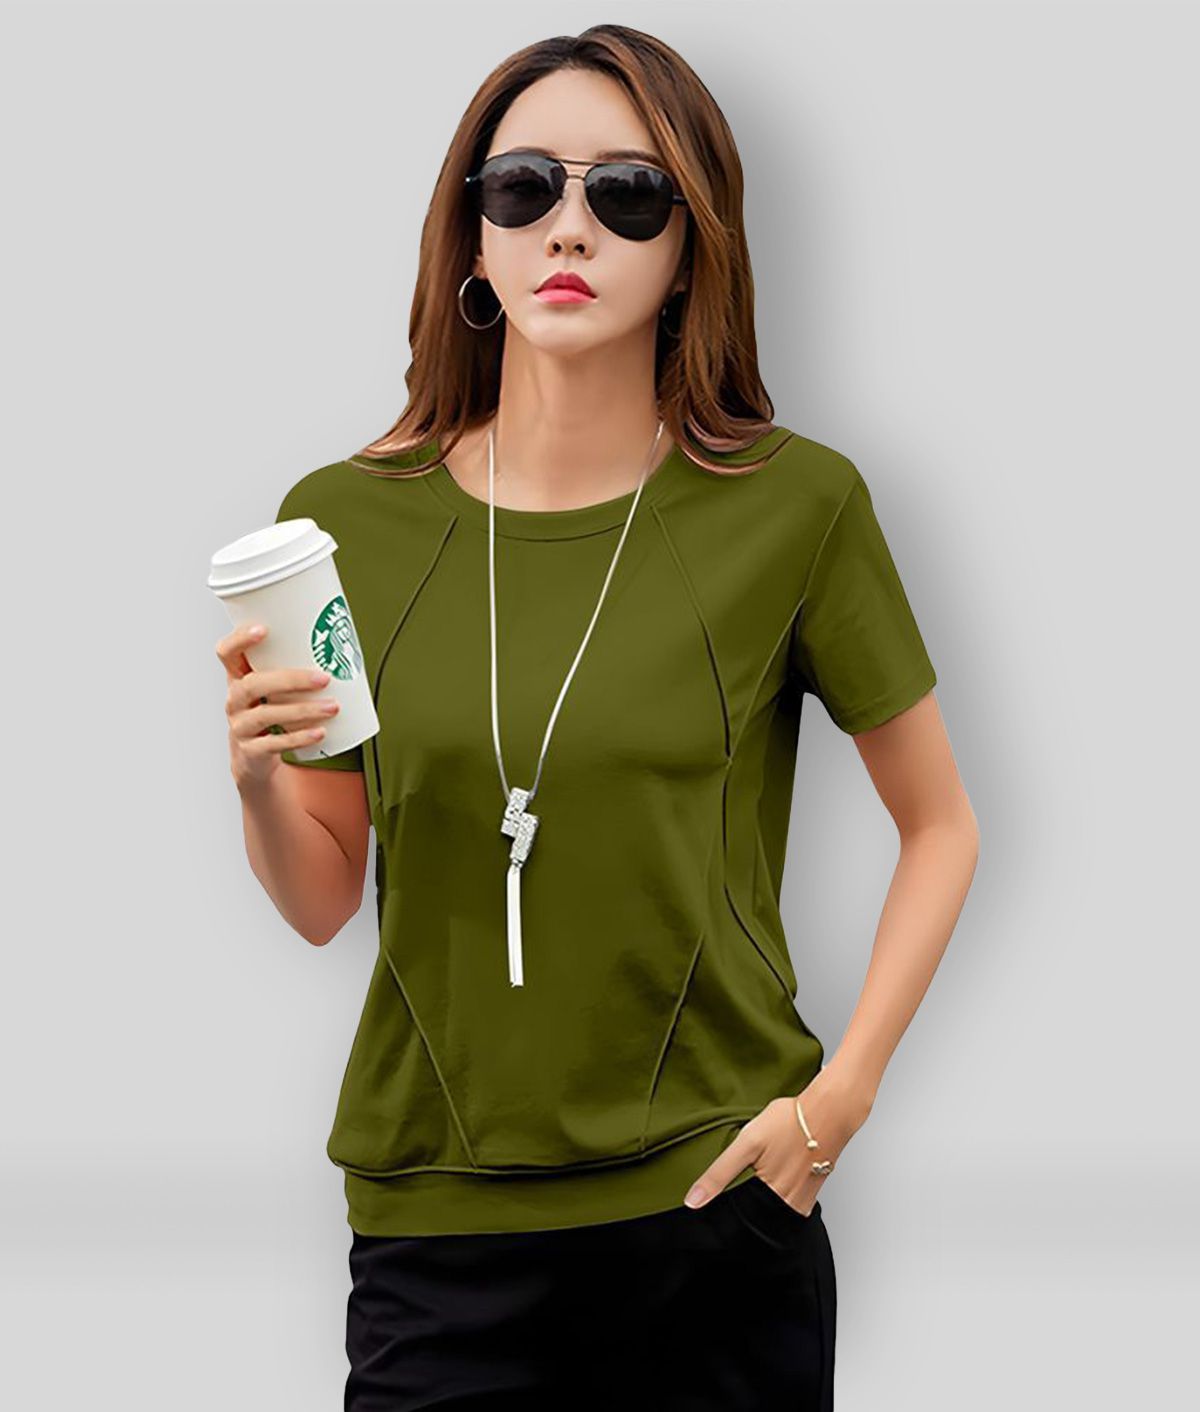     			GESPO - Green Cotton Regular Fit Women's T-Shirt ( Pack of 1 )